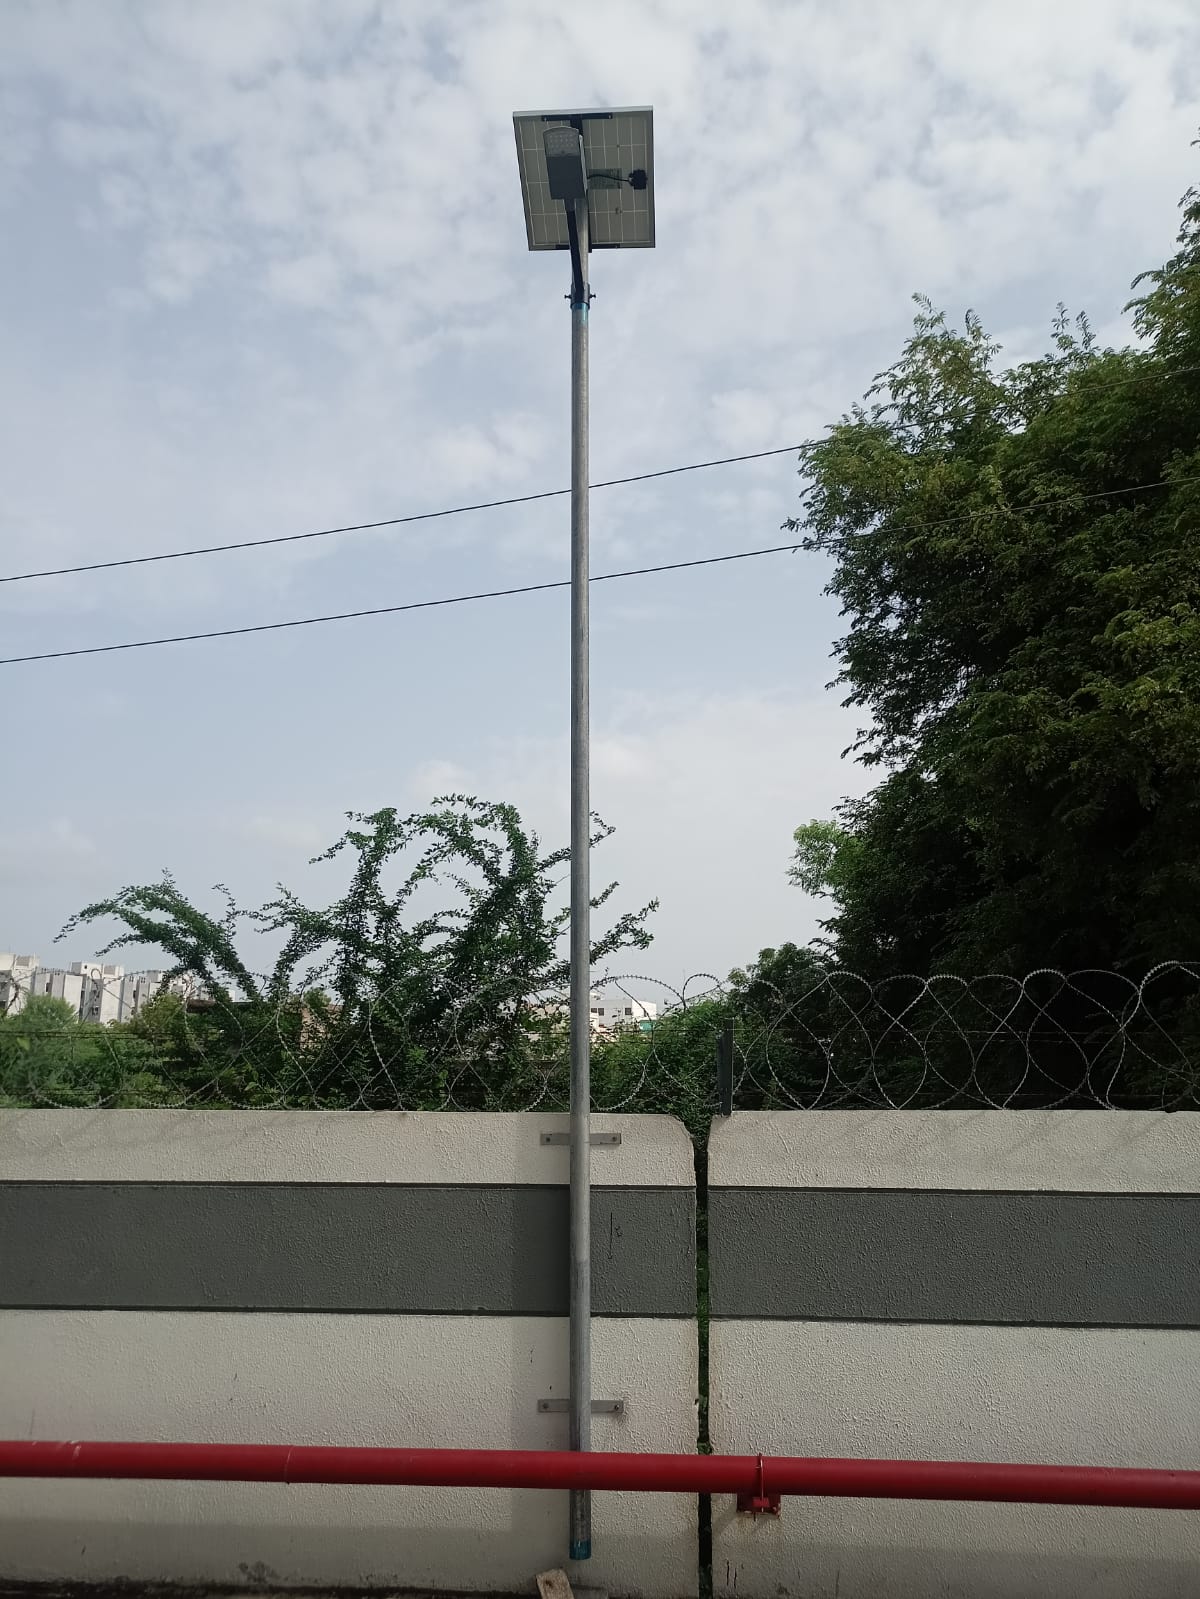 30 Watt solar street light